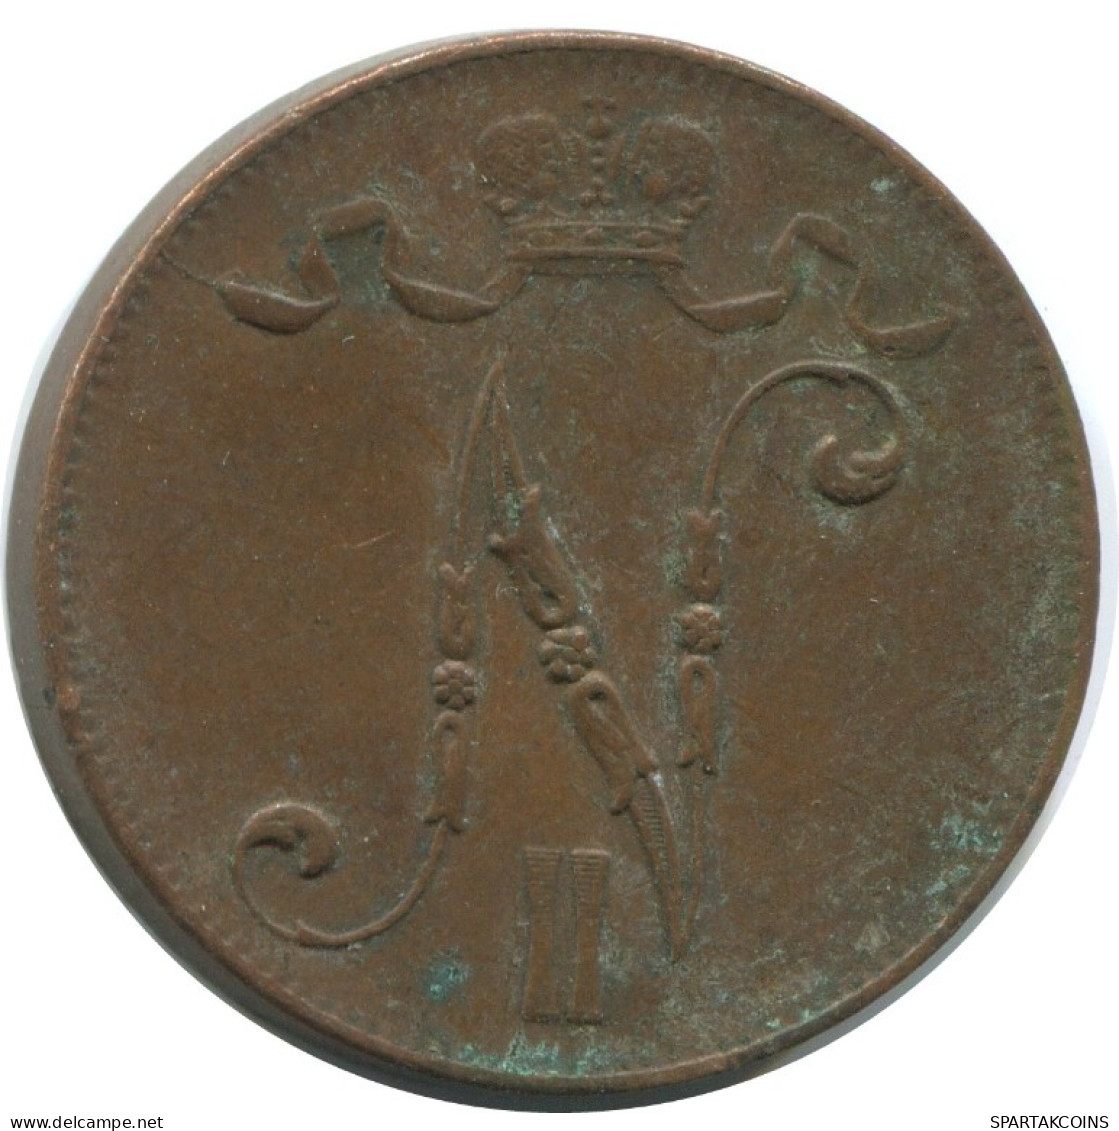 5 PENNIA 1916 FINLAND Coin RUSSIA EMPIRE #AB256.5.U.A - Finland